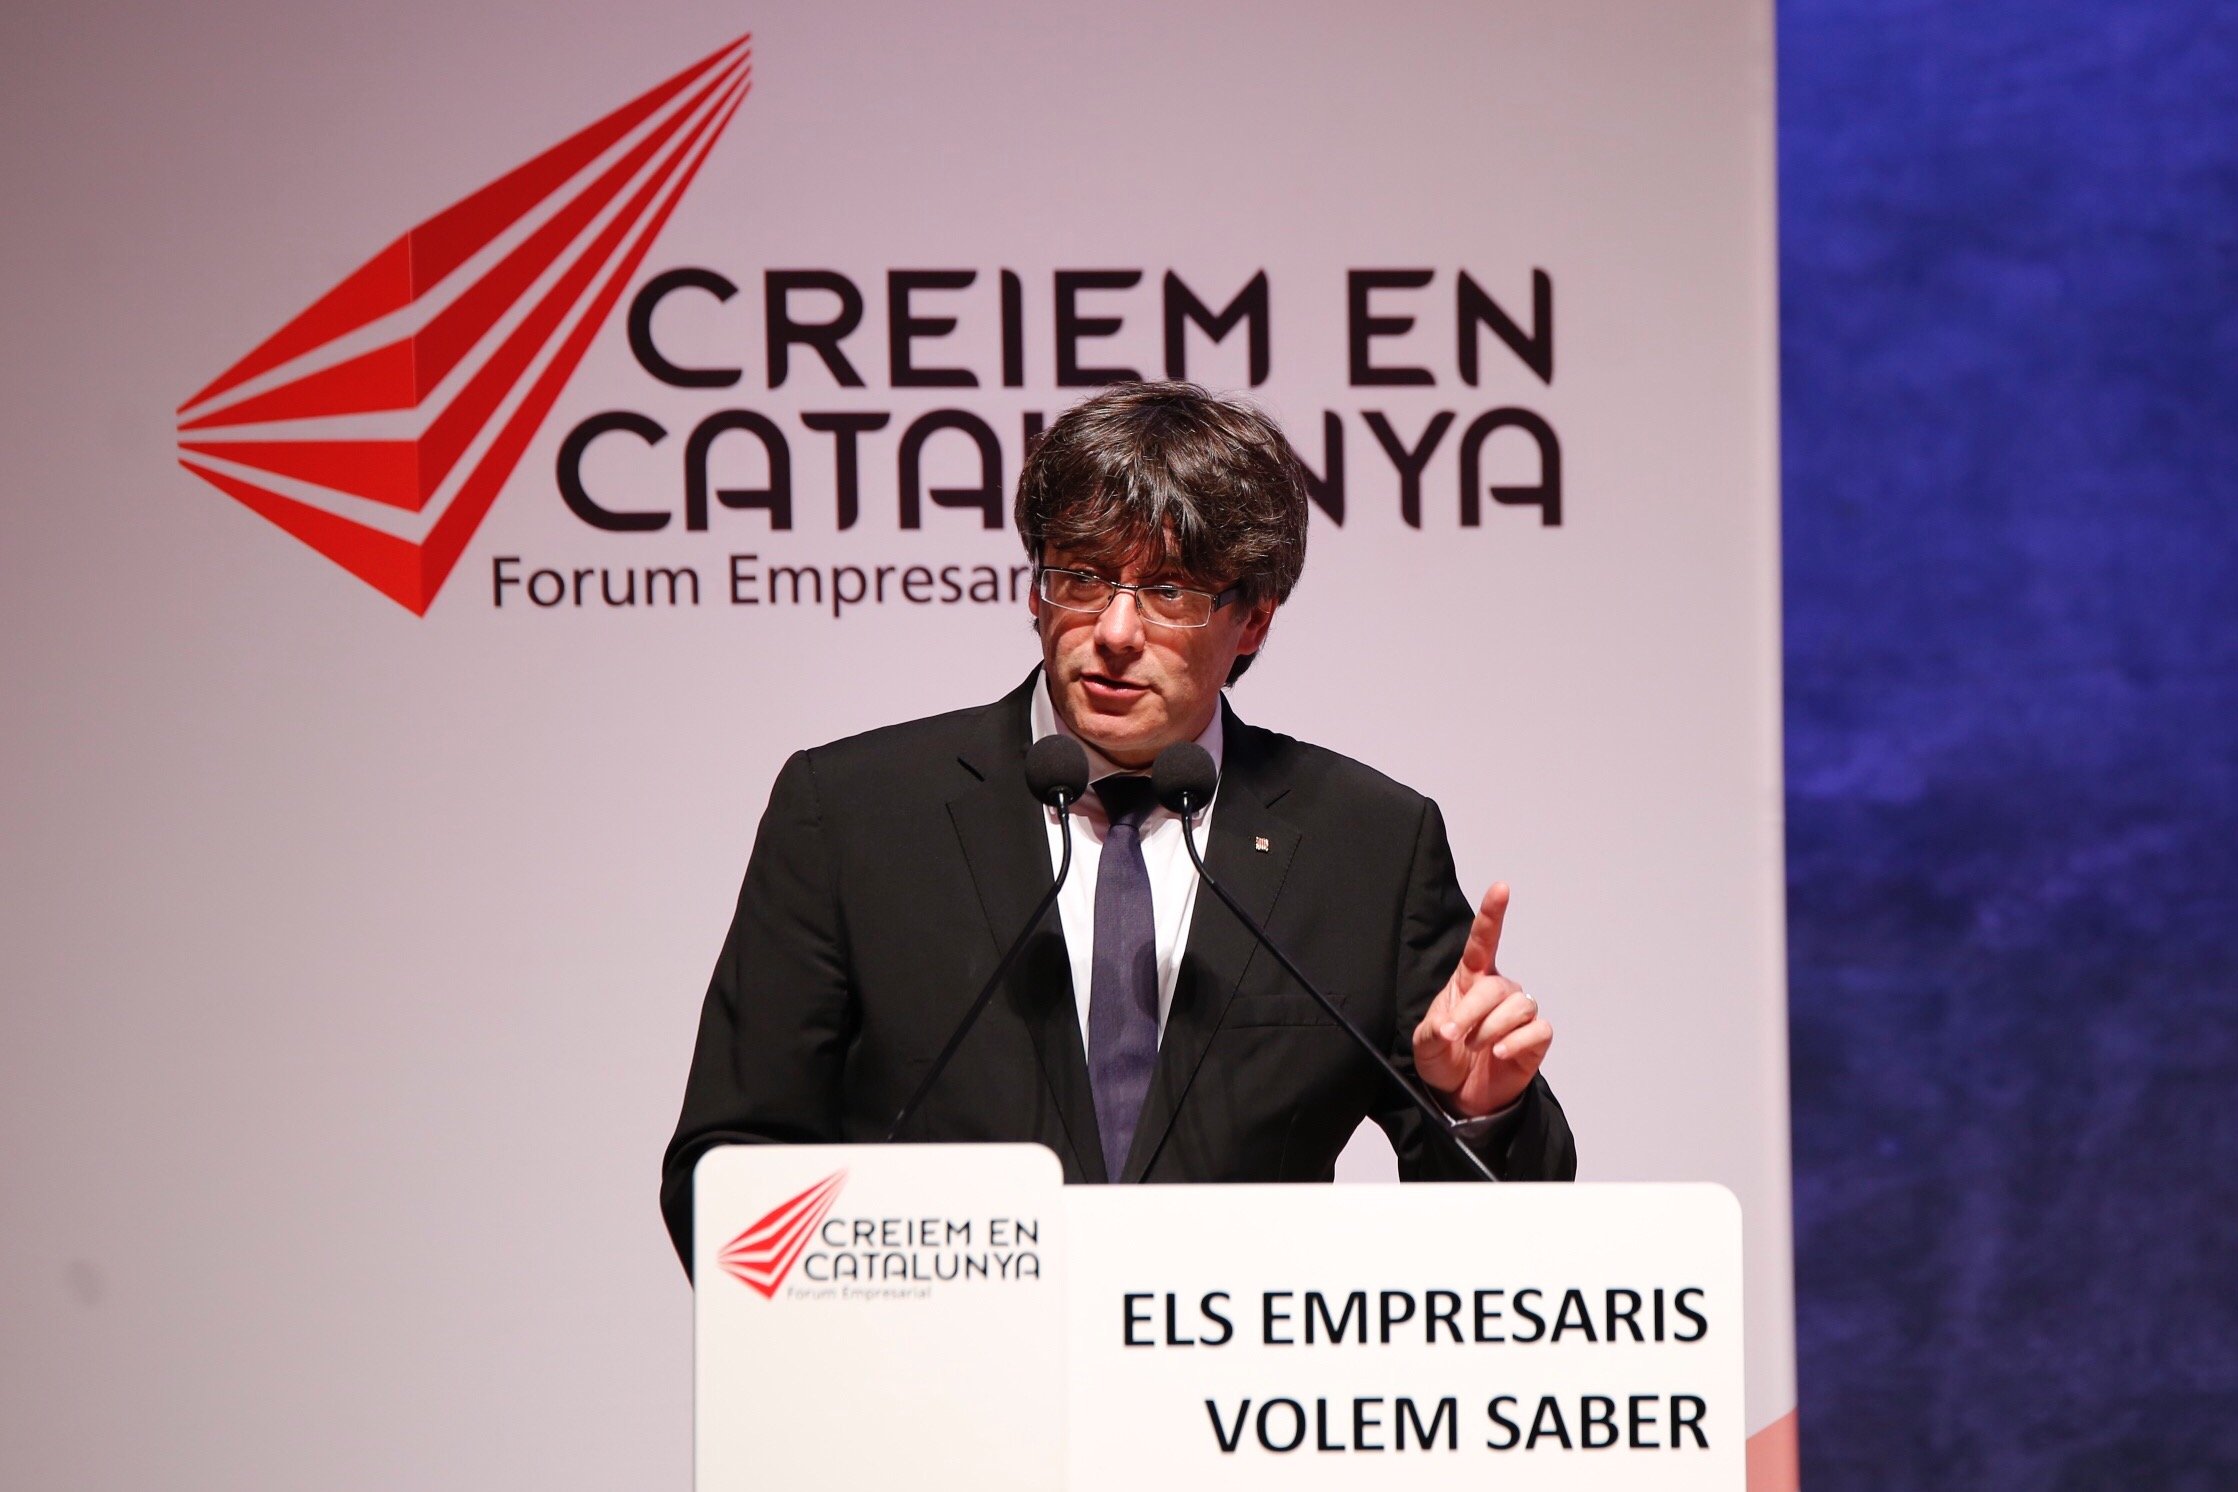 Puigdemont convenç l'empresariat: "L'statu quo és una amenaça"